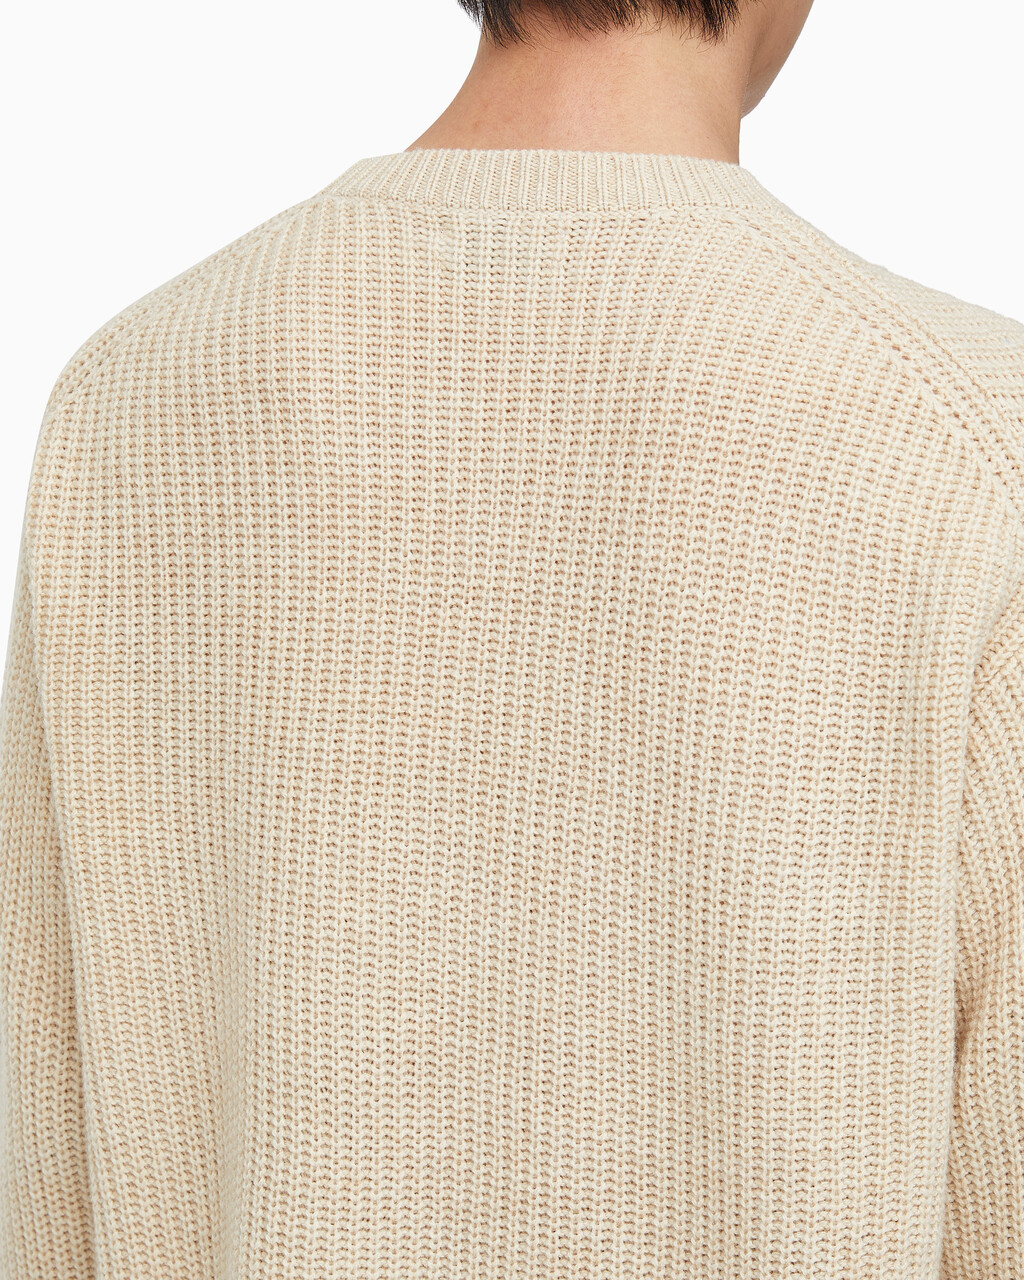 Buy 남성 롱슬리브 크루넥 스웨터 in color BEIGE